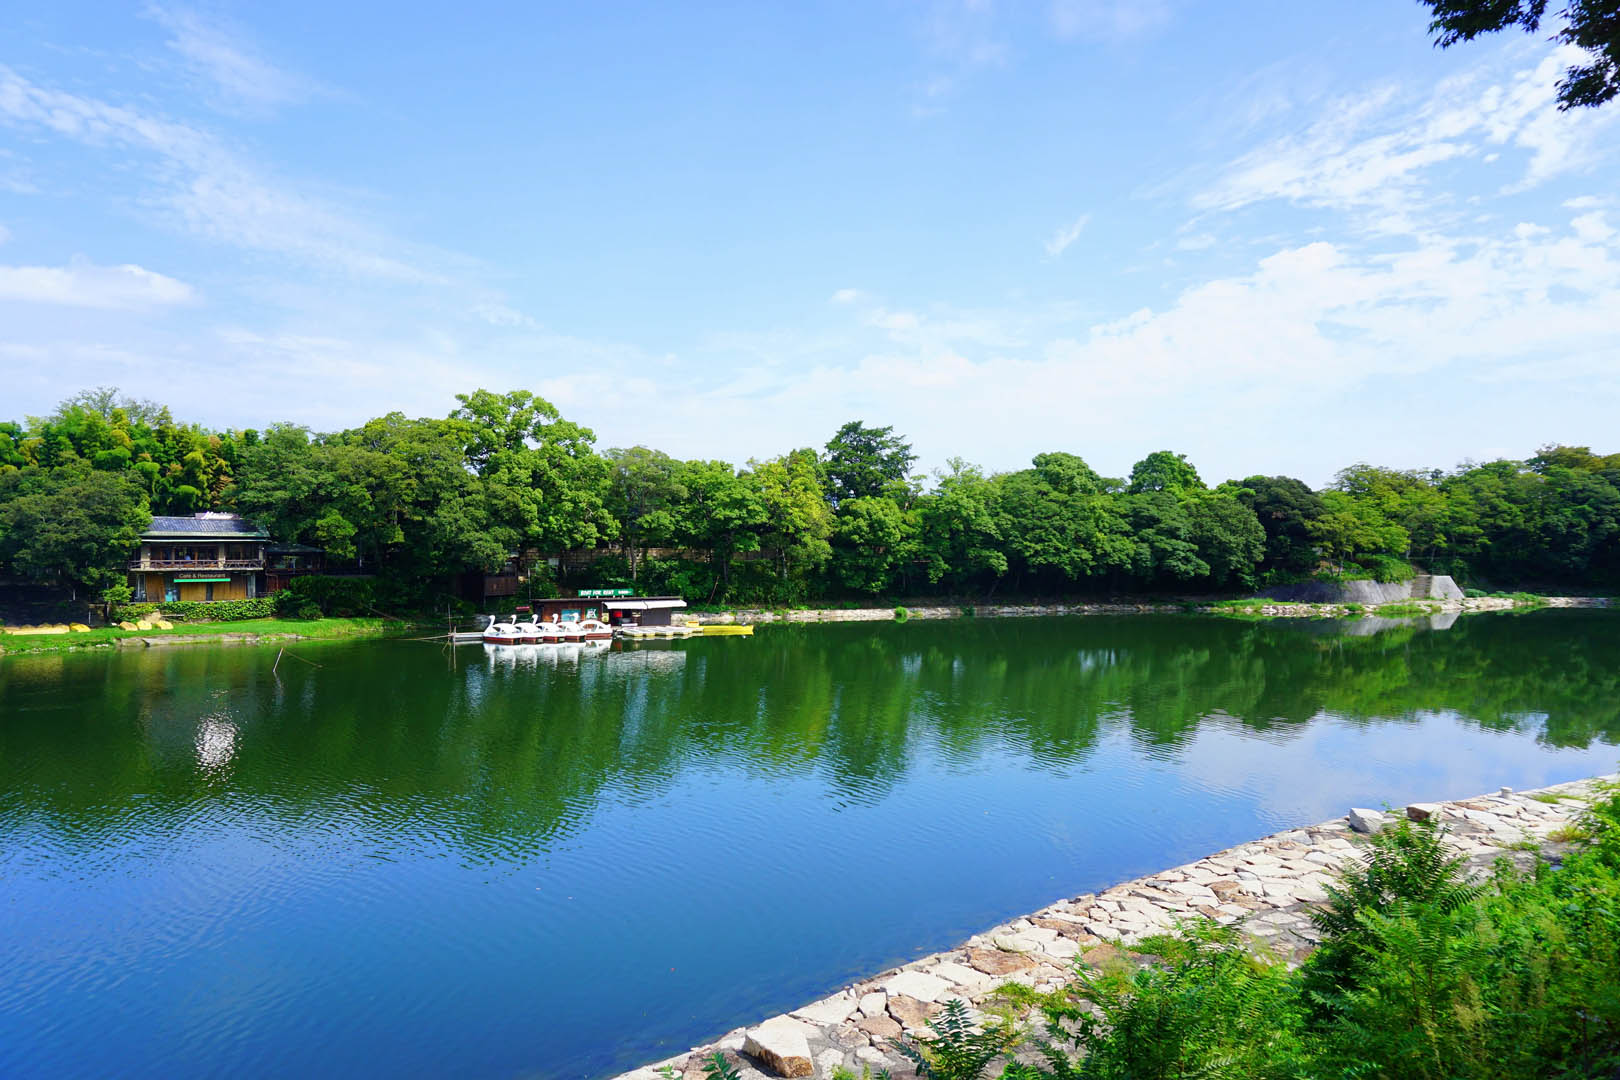 岡山城跟後樂園又隔了一條河